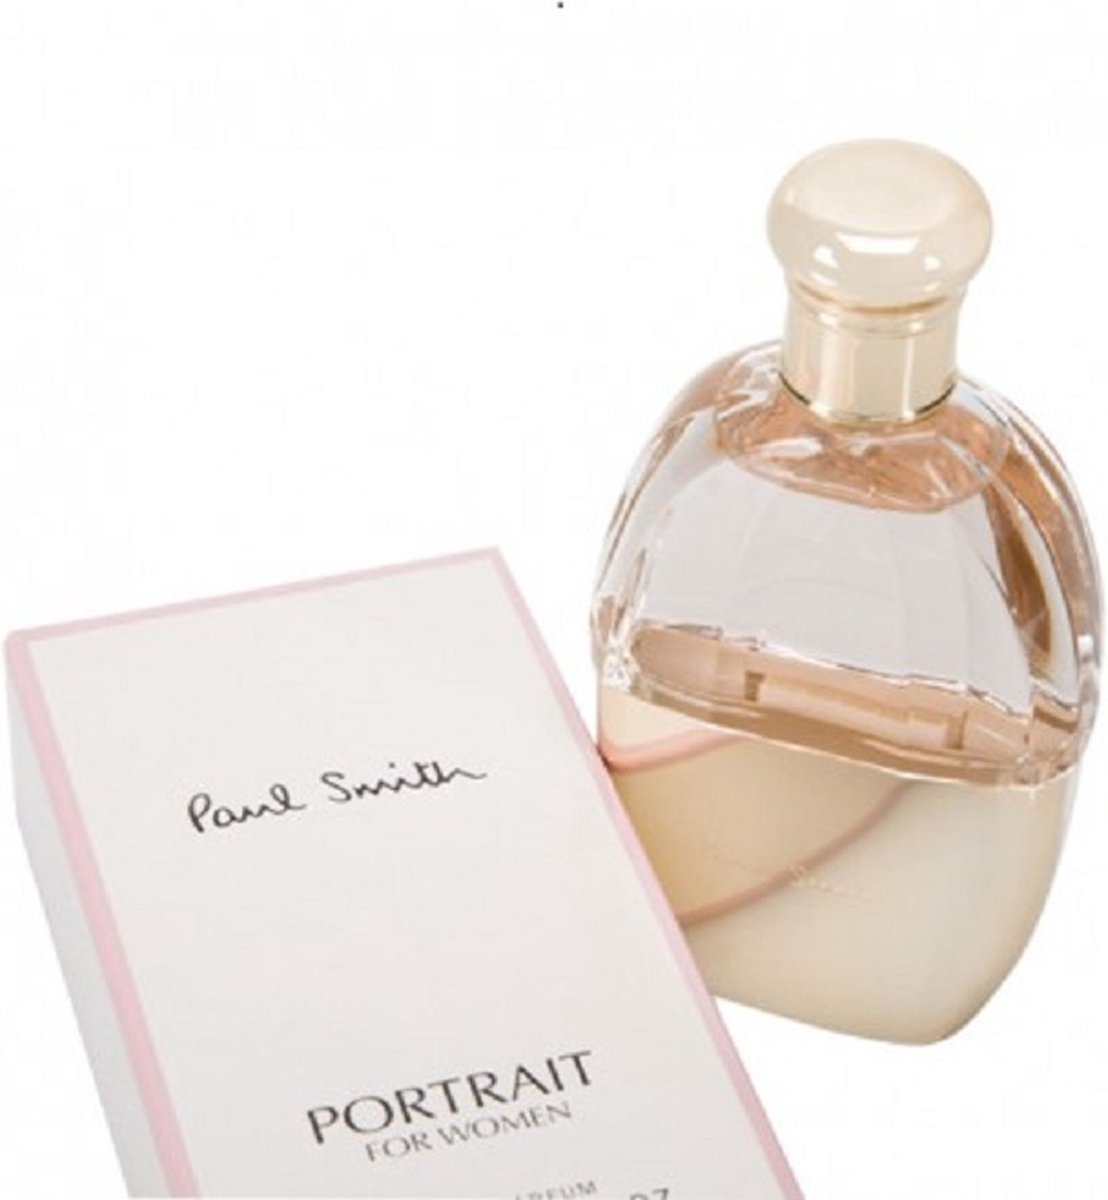 Paul Smith - Portrait - 40ML - Eau de parfum - For Women - Dames Parfum - Moederdag Cadeau Tip!